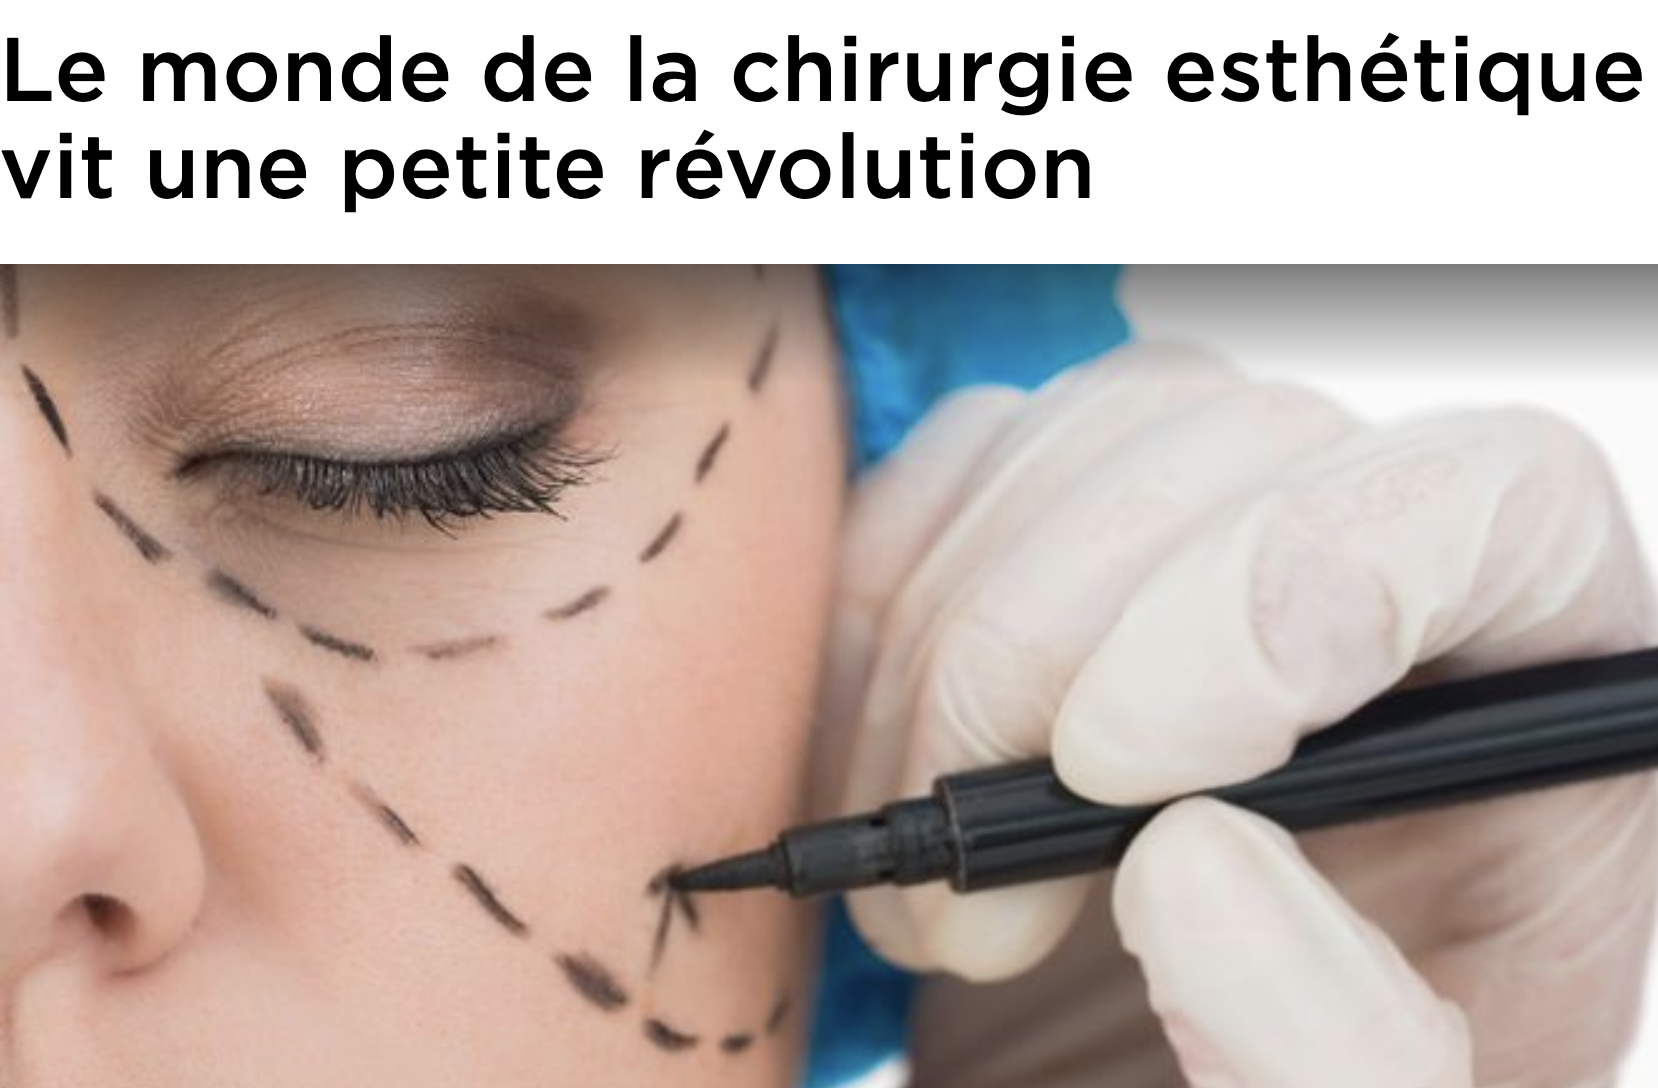 Le monde de la chirurgie esthétique vit une petite révolution